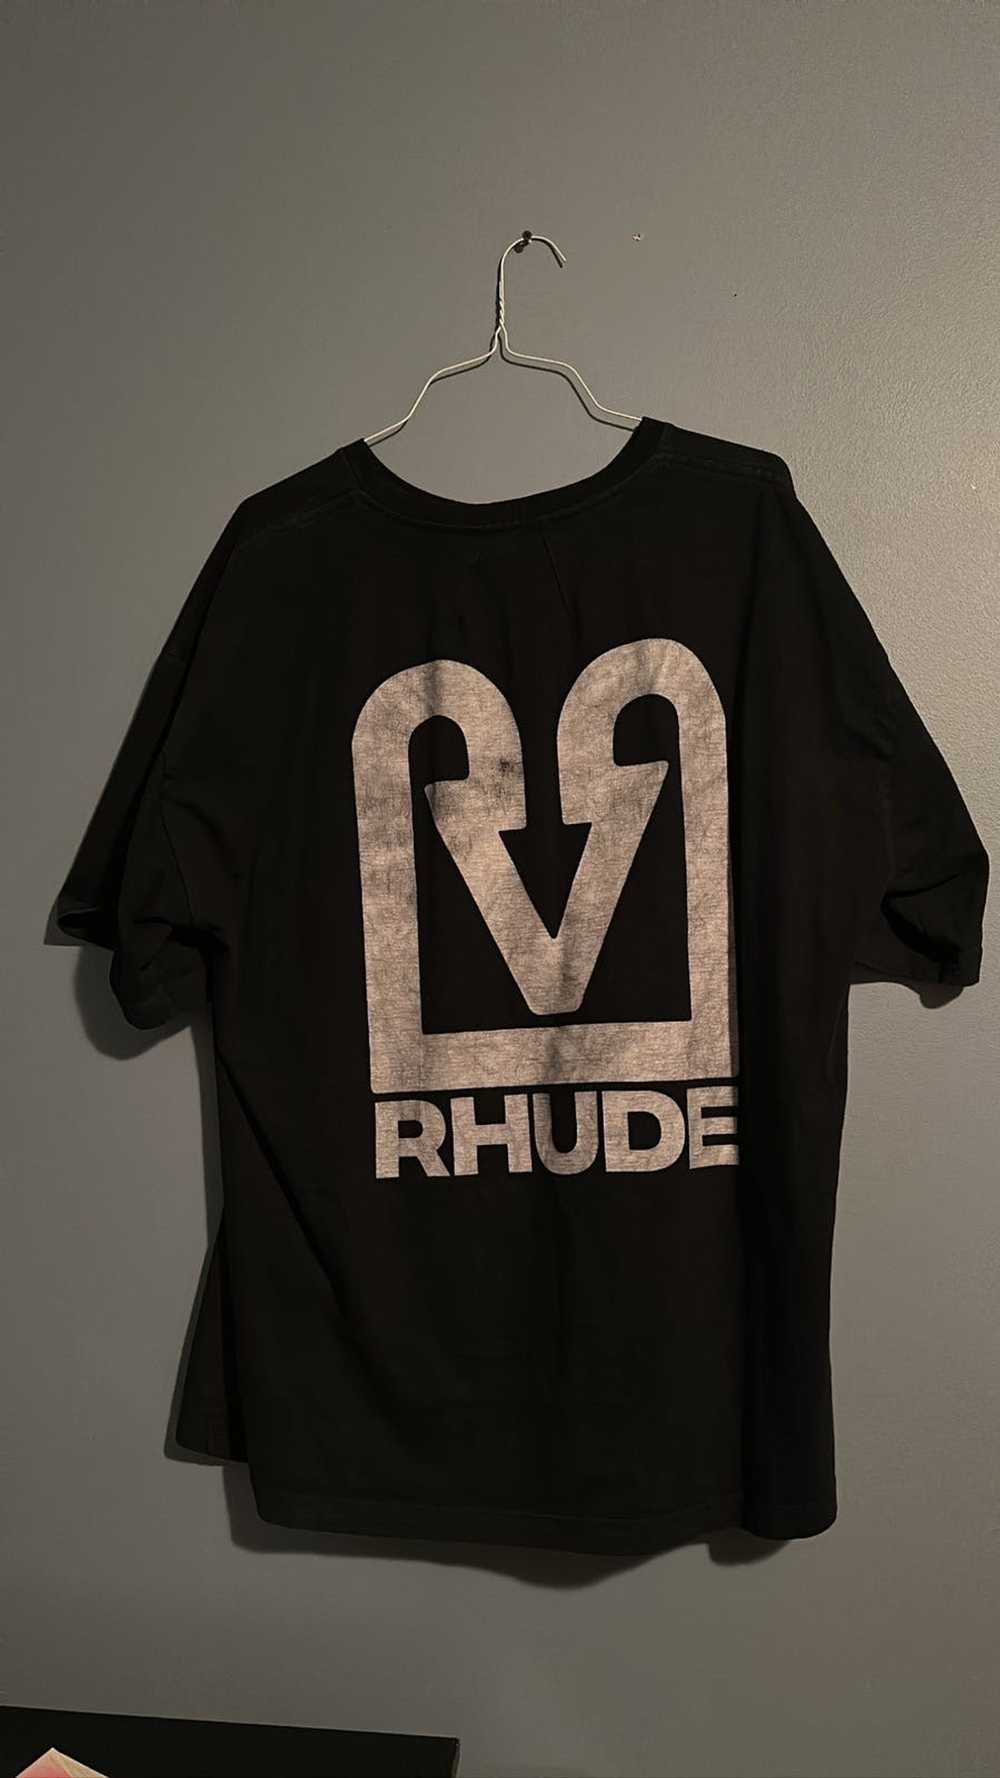 Rhude RHUDE SHIRT - image 2